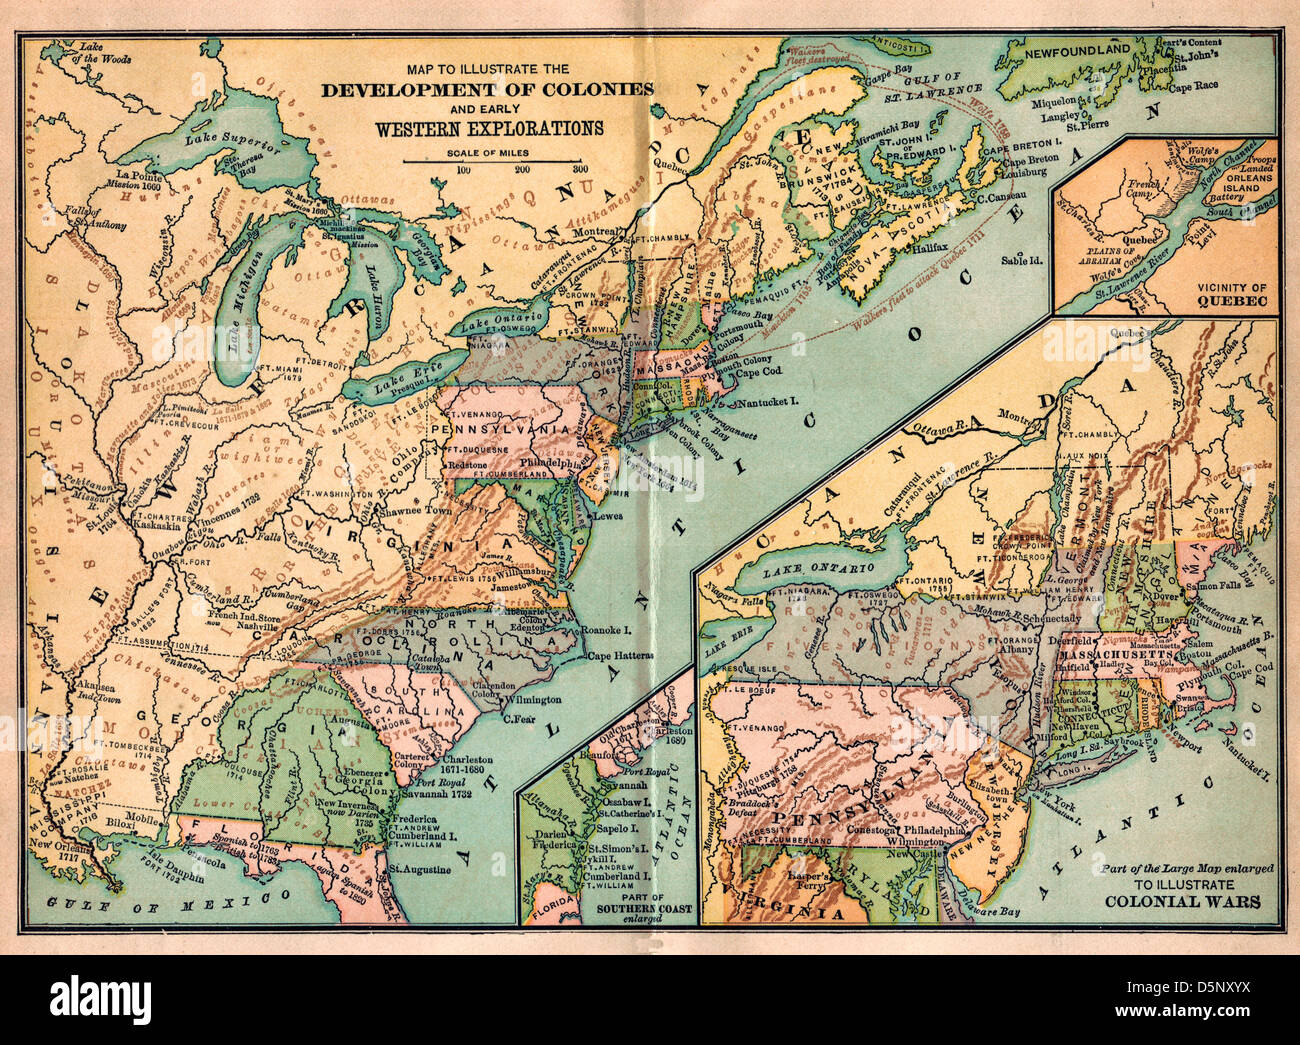 Vintage carte des États-Unis Amérique - développement des colonies et l'exploration de l'Ouest et les guerres coloniales Banque D'Images